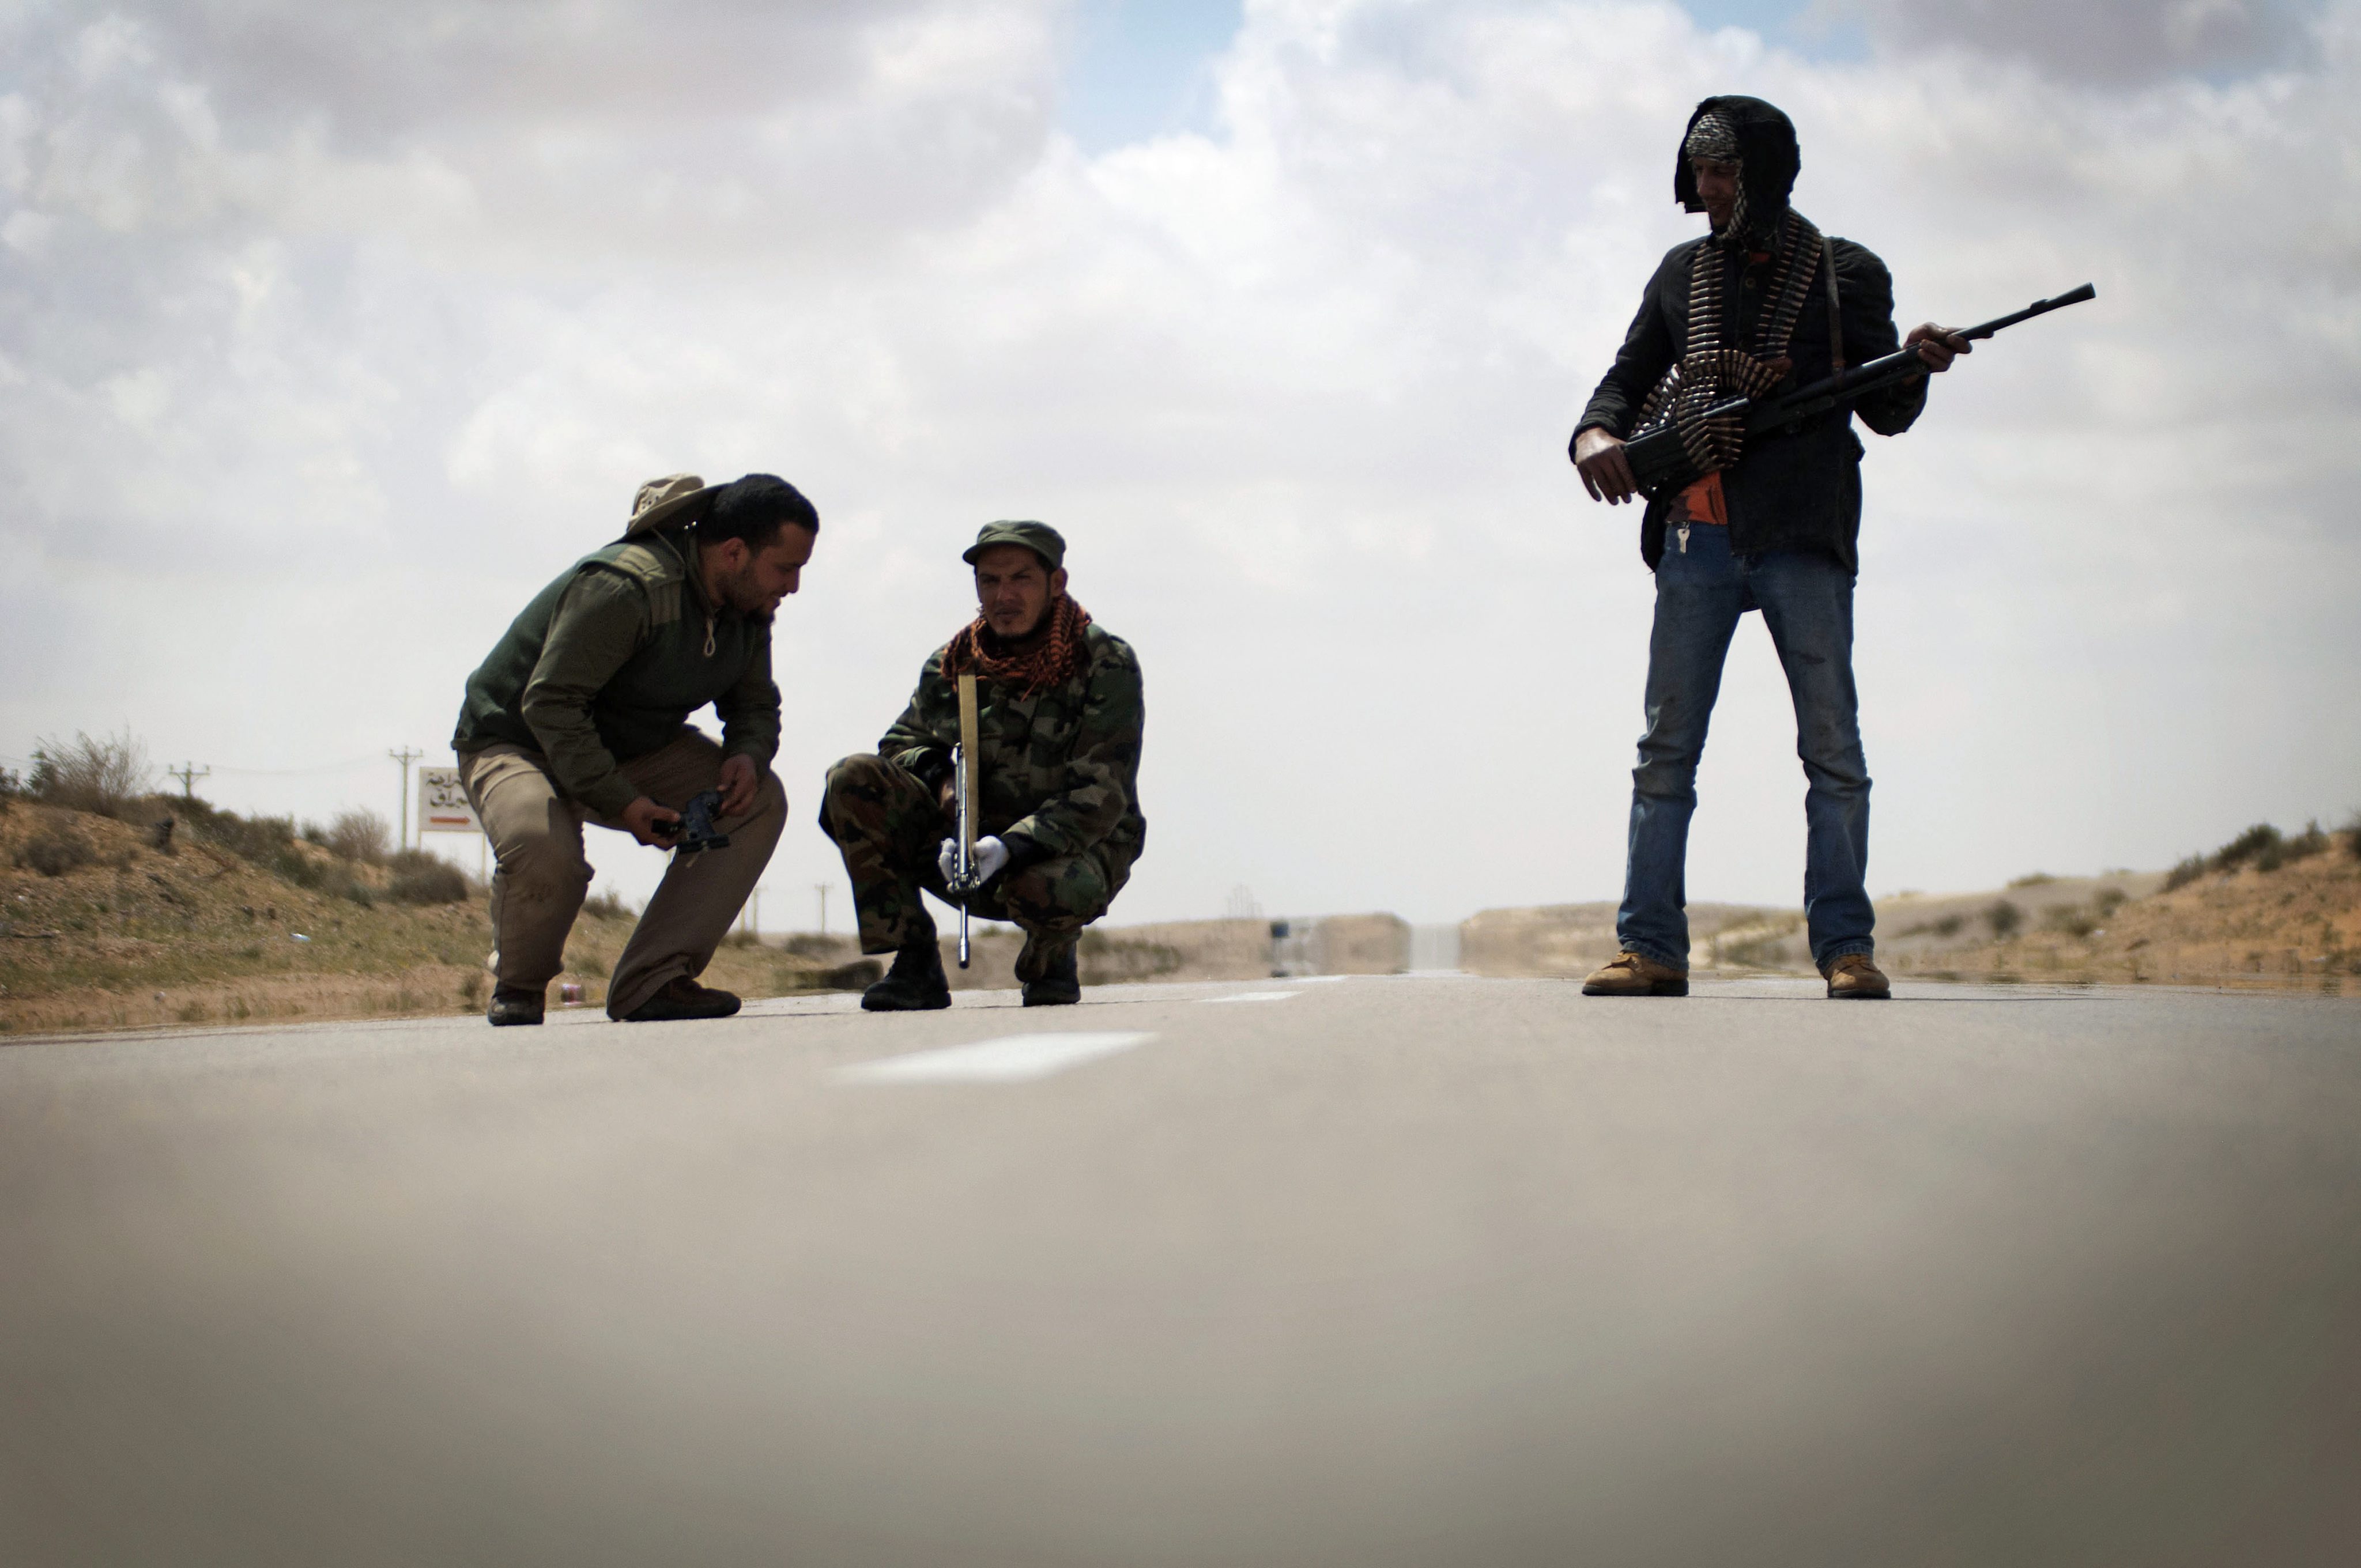 Συνεχίζονται οι μάχες στη Λιβύη, ενώ το καθεστώς «συνομιλεί» με τη Δύση για την έξοδο